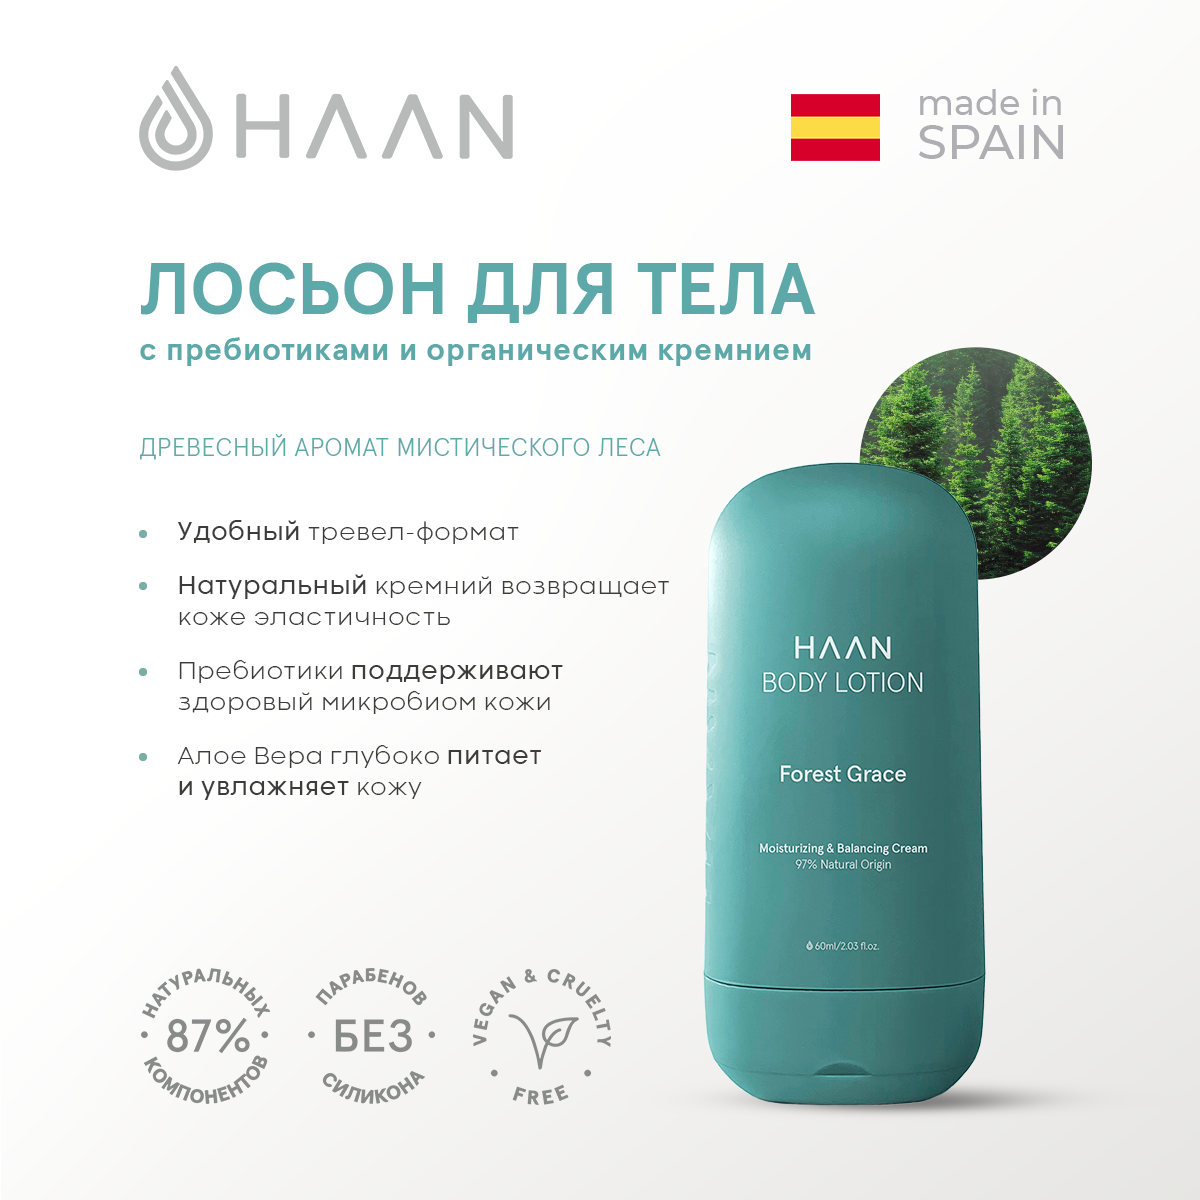 Лосьон для тела HAAN с пребиотиками и органическим кремнием Мистический лес тревел-формат